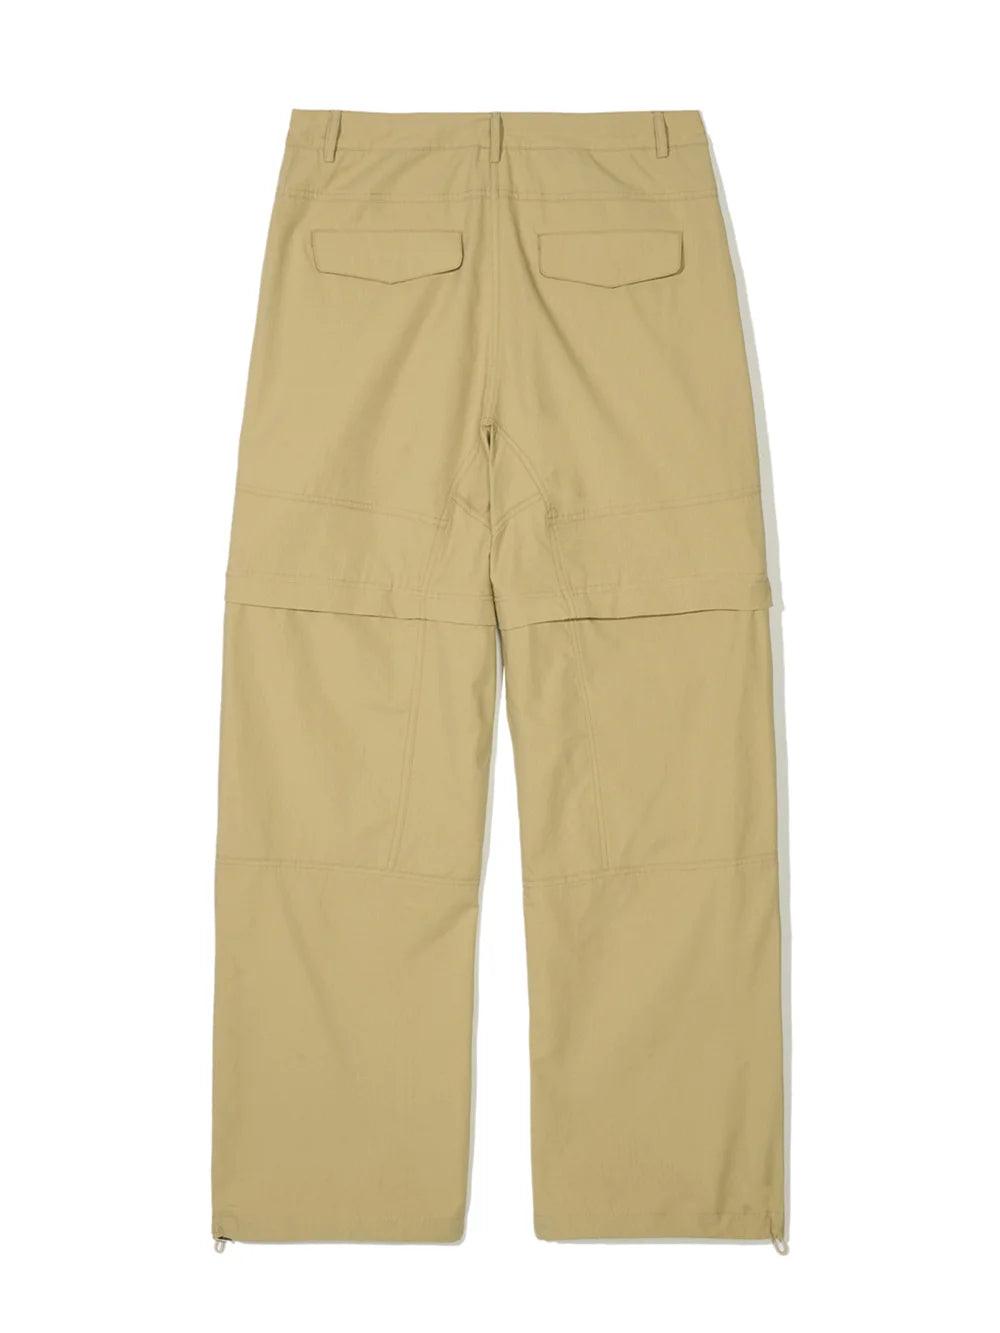 Partimento Detachable Zipper Parachute Pants - Beige - Pants